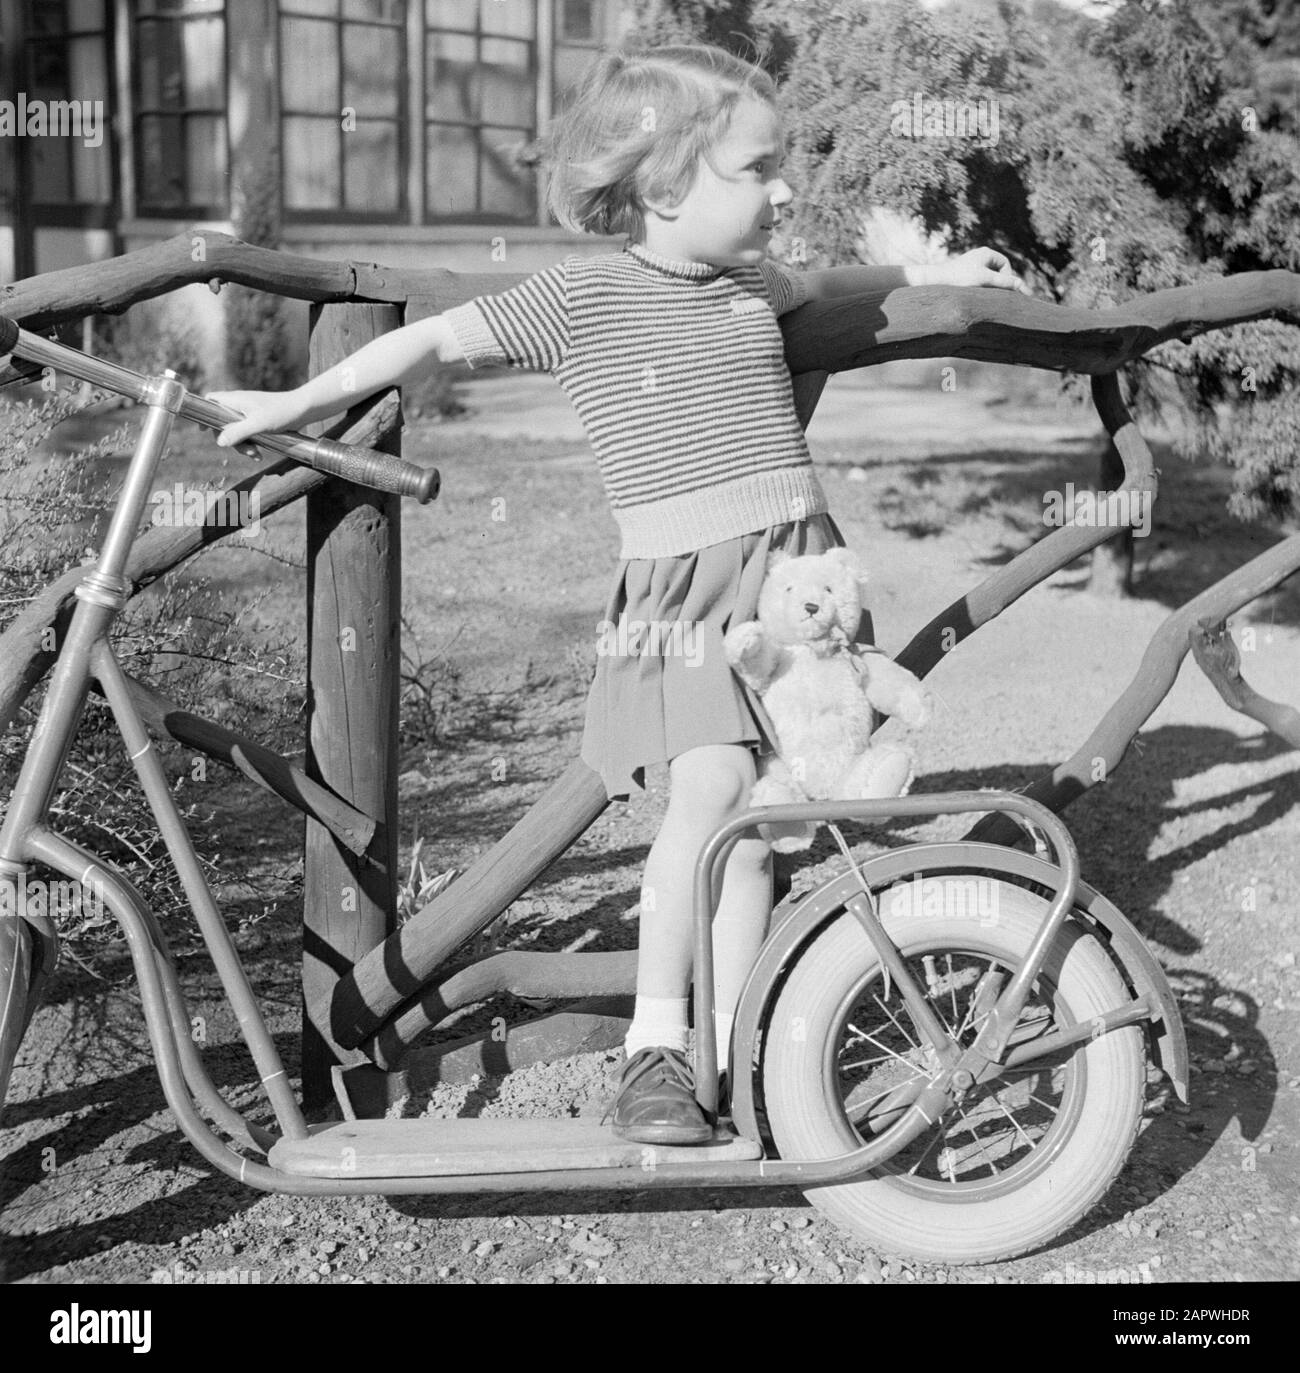 Modefotografie Mädchen mit Autoped und Teddybär Datum: 1952 Schlagwörter: Autopeds, Kleidung, Mädchen Stockfoto